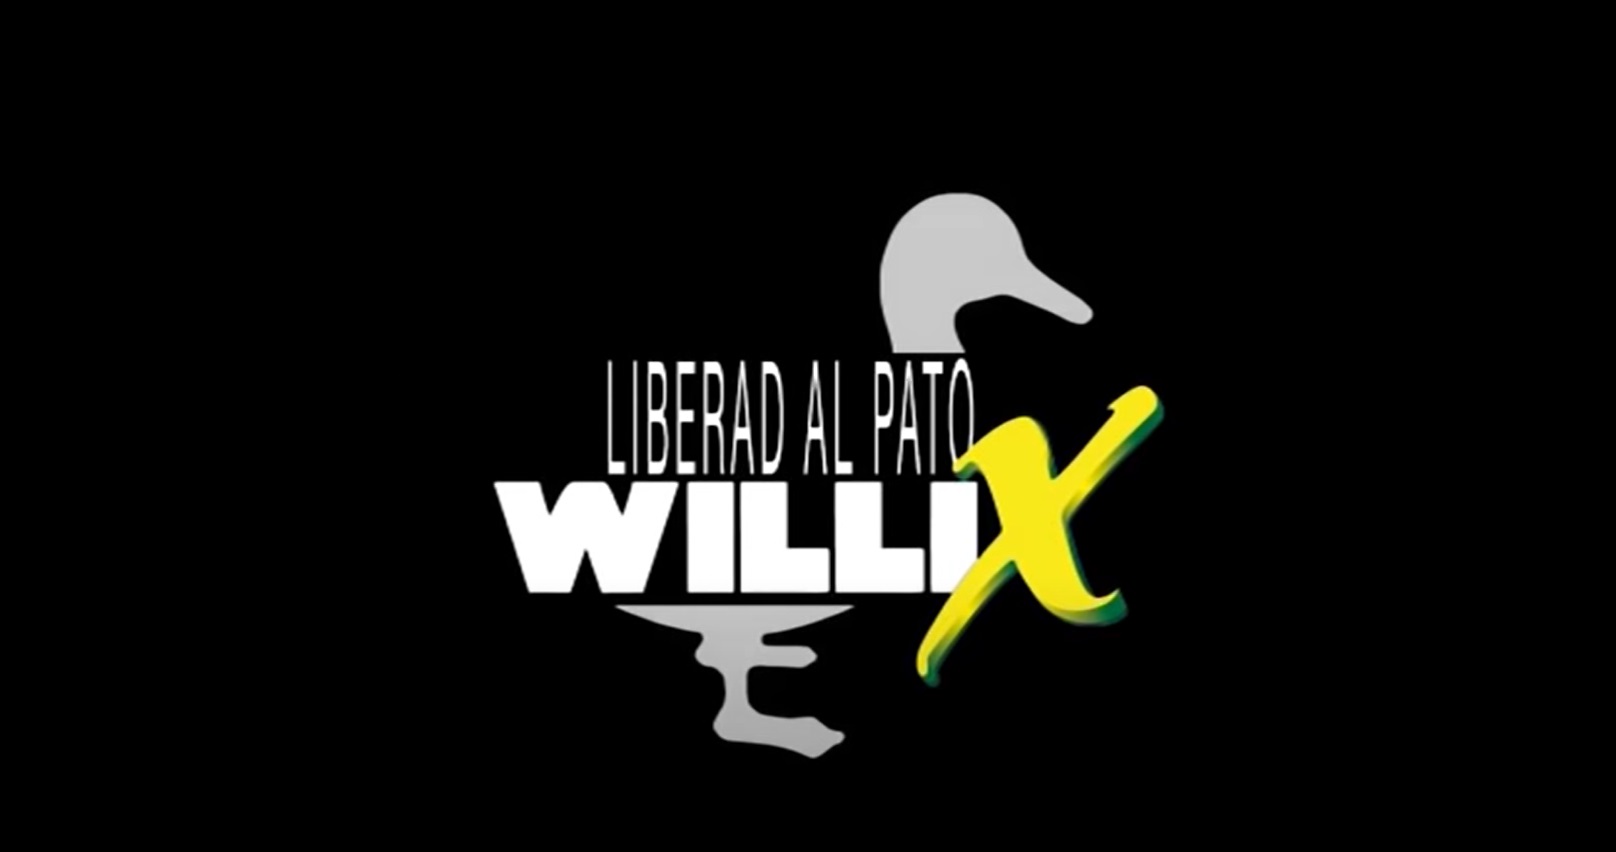 MIXTA , Liberad , pato Willix, programapublicidad